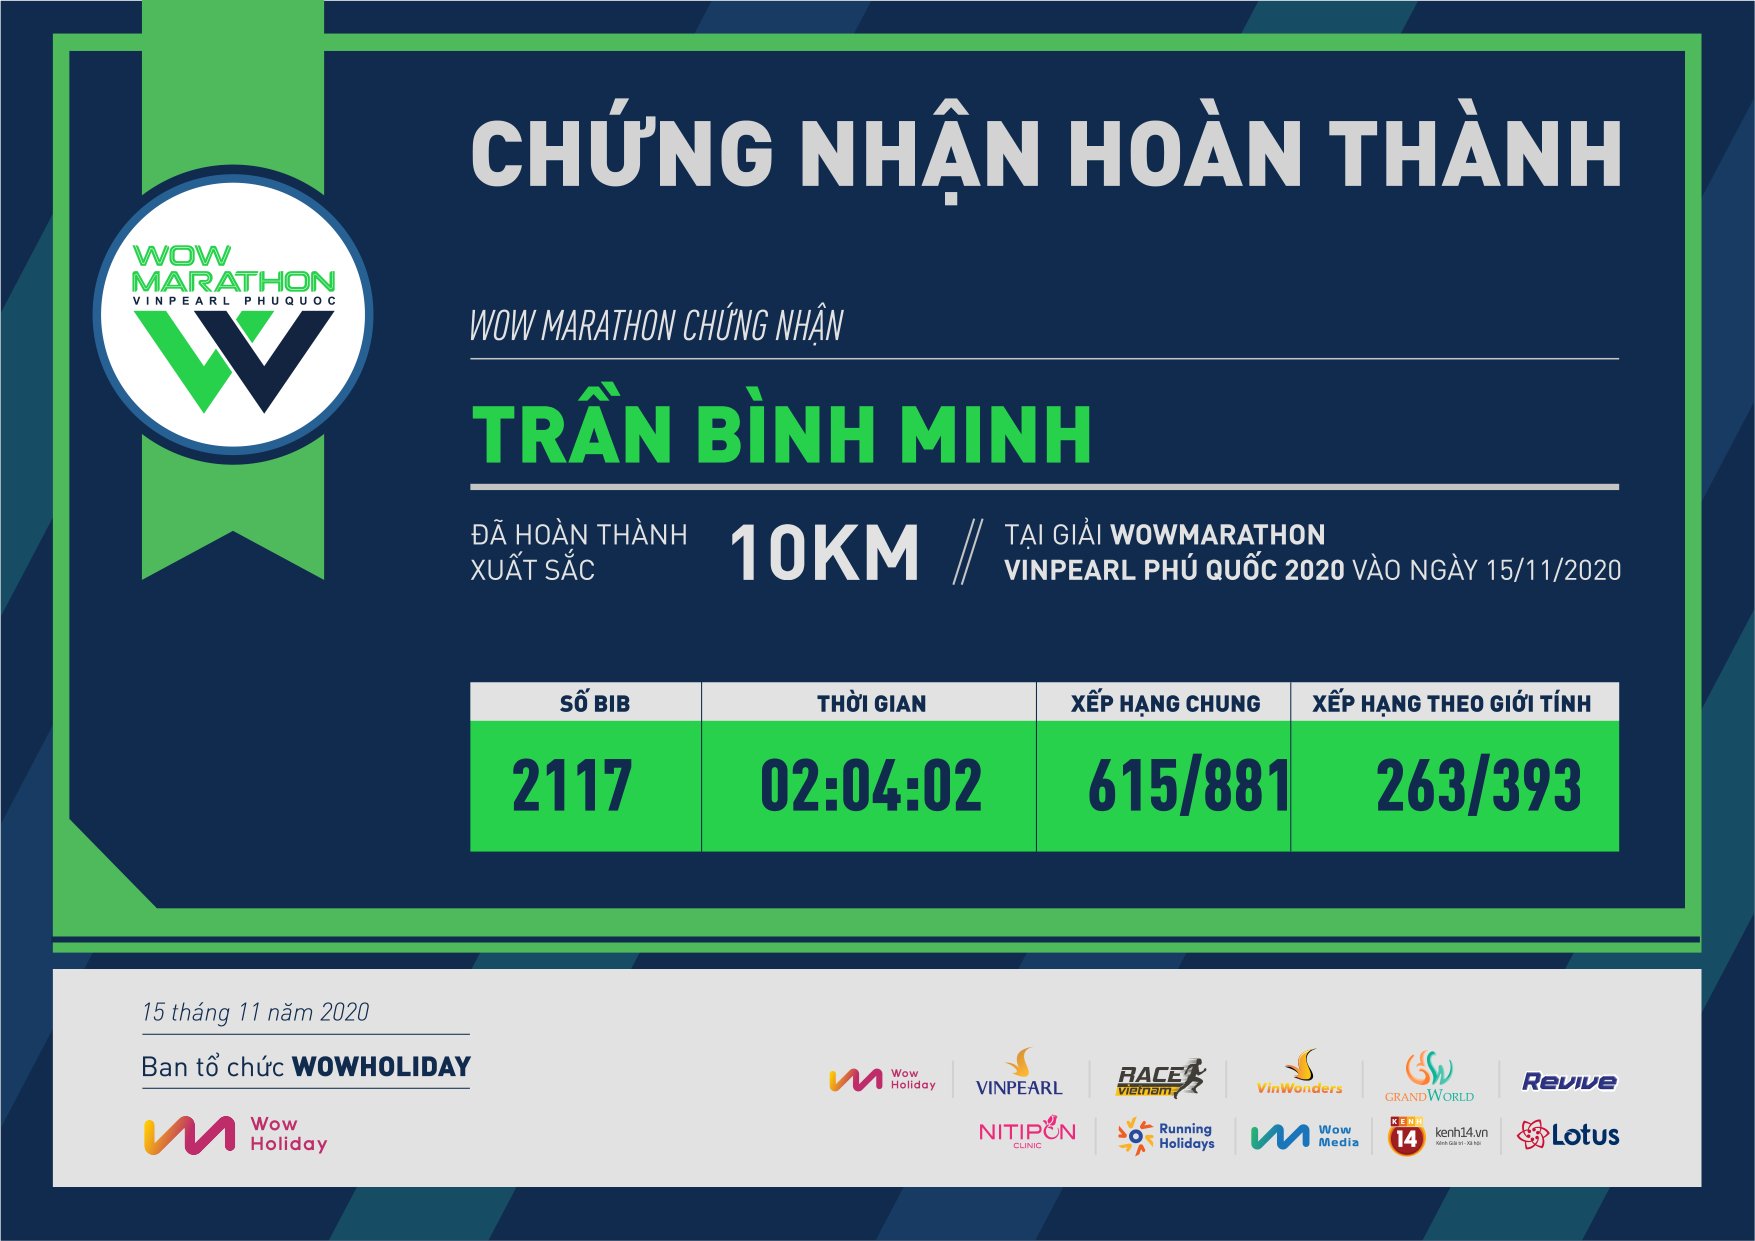 2117 - Trần Bình Minh